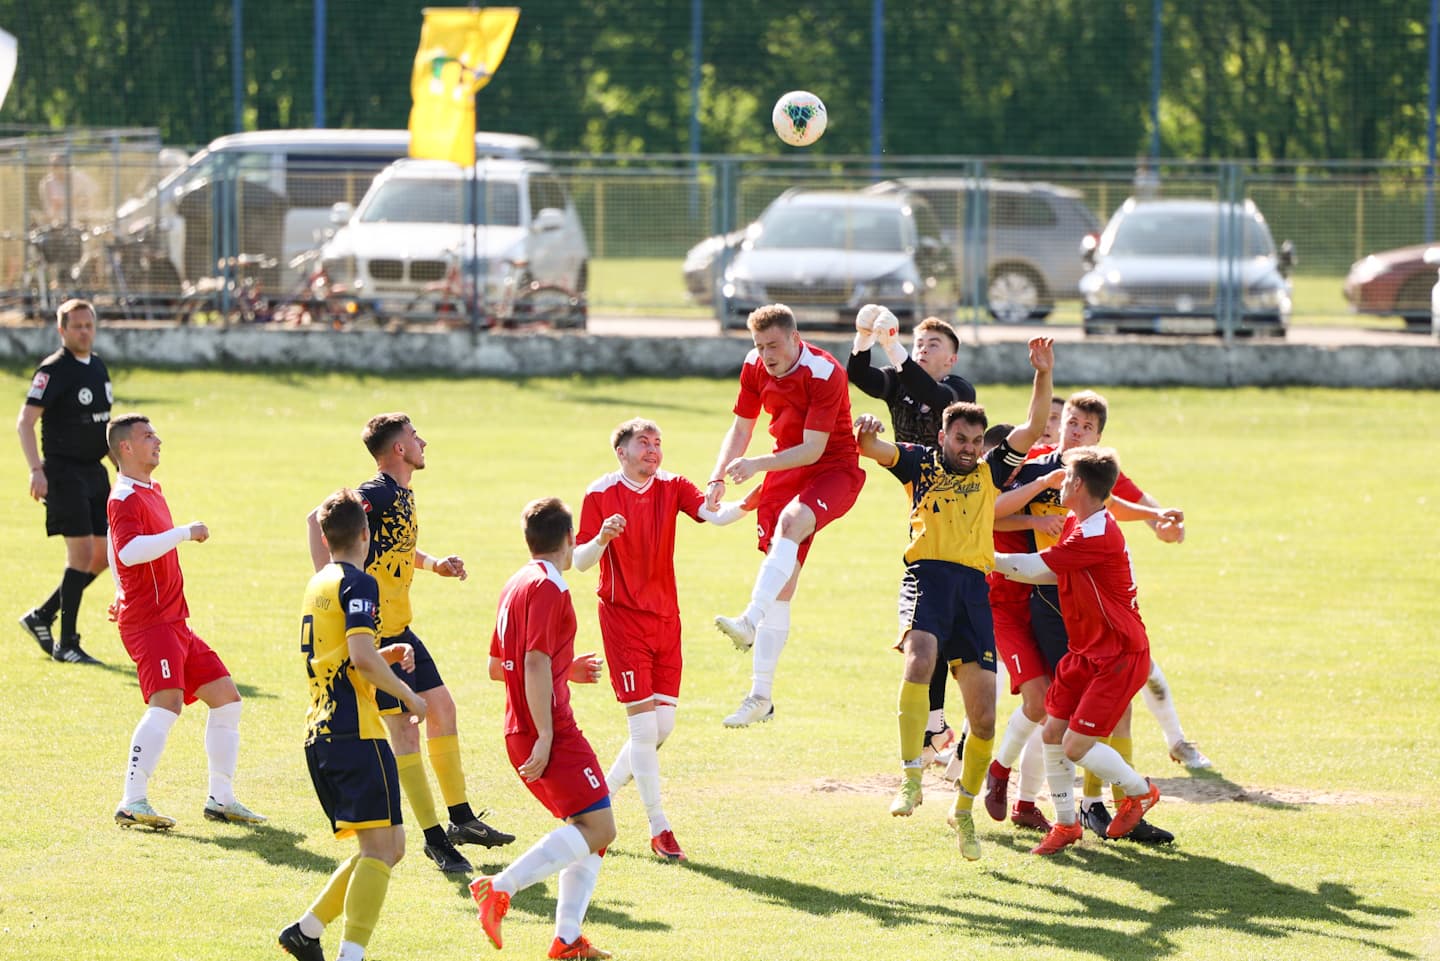 Nyugat-szlovákiai IV. liga (Régióbajnokság) 23. forduló: 7 gól, 2 piros lap, hazai vereség Bősön